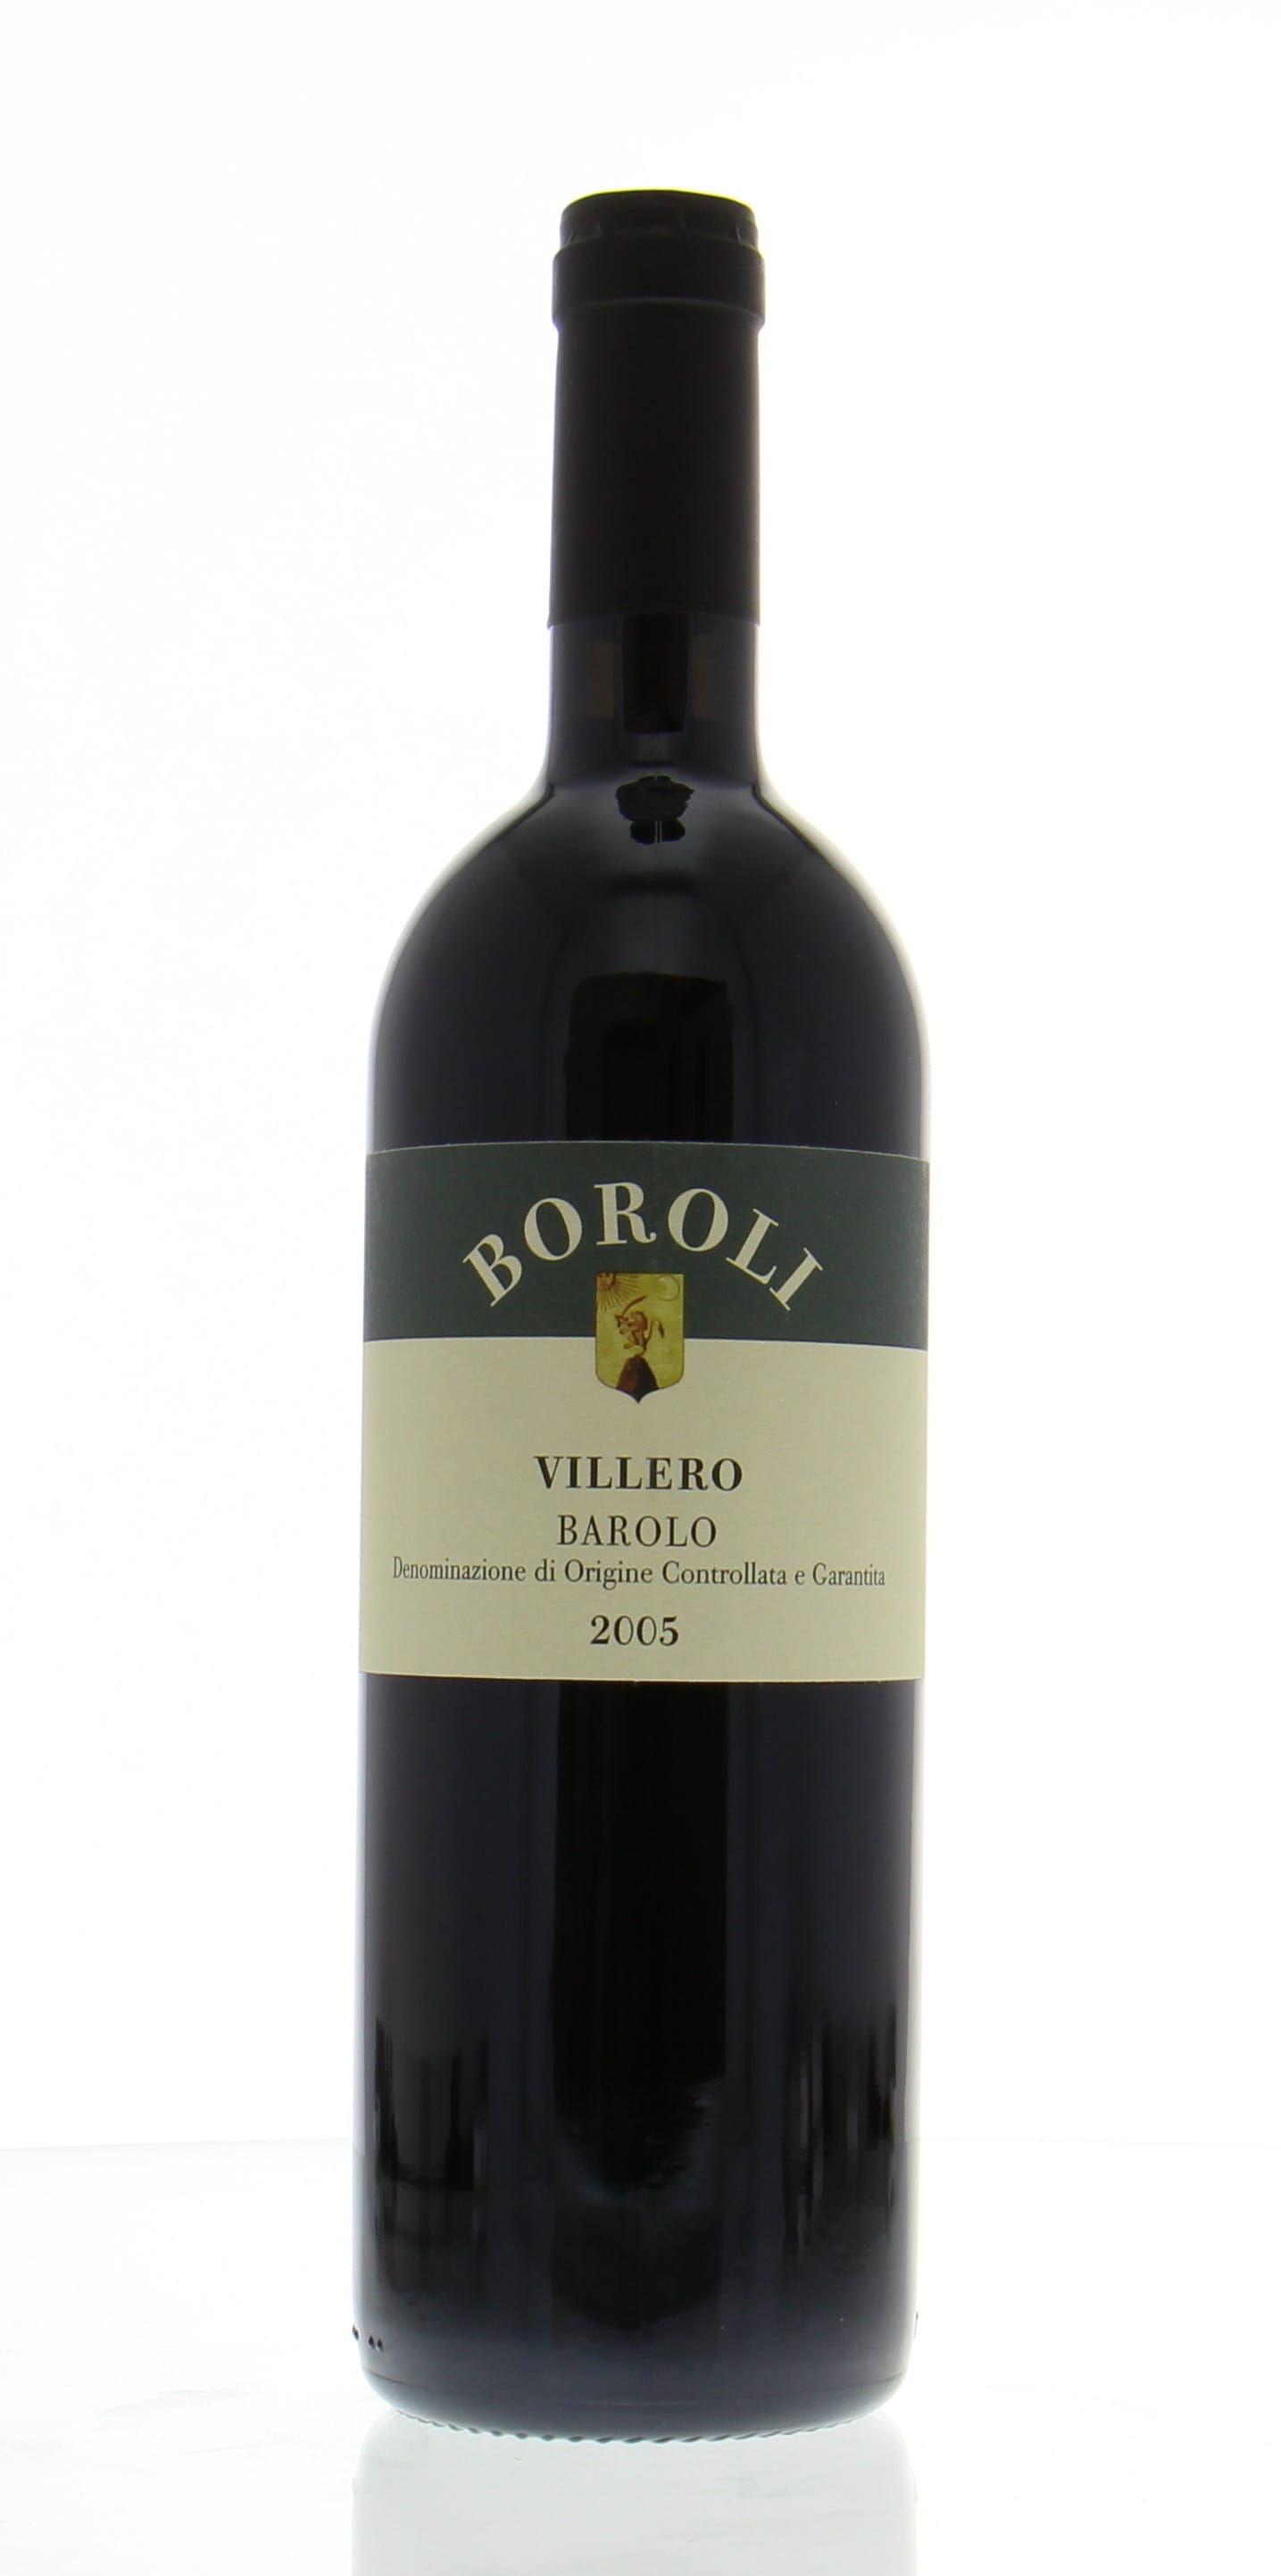 Boroli - Barolo Villero 2005 Perfect